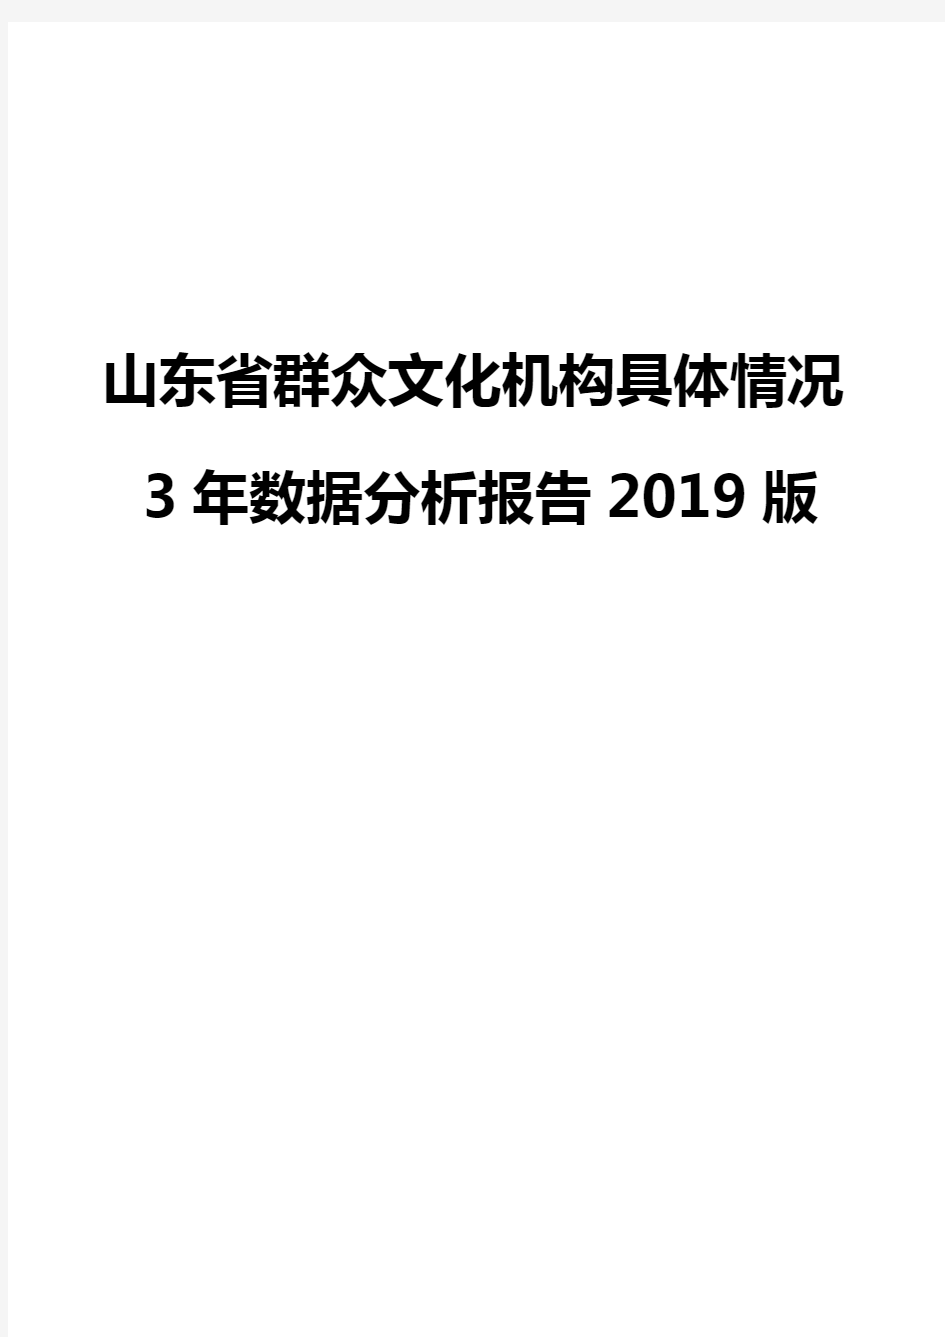 山东省群众文化机构具体情况3年数据分析报告2019版